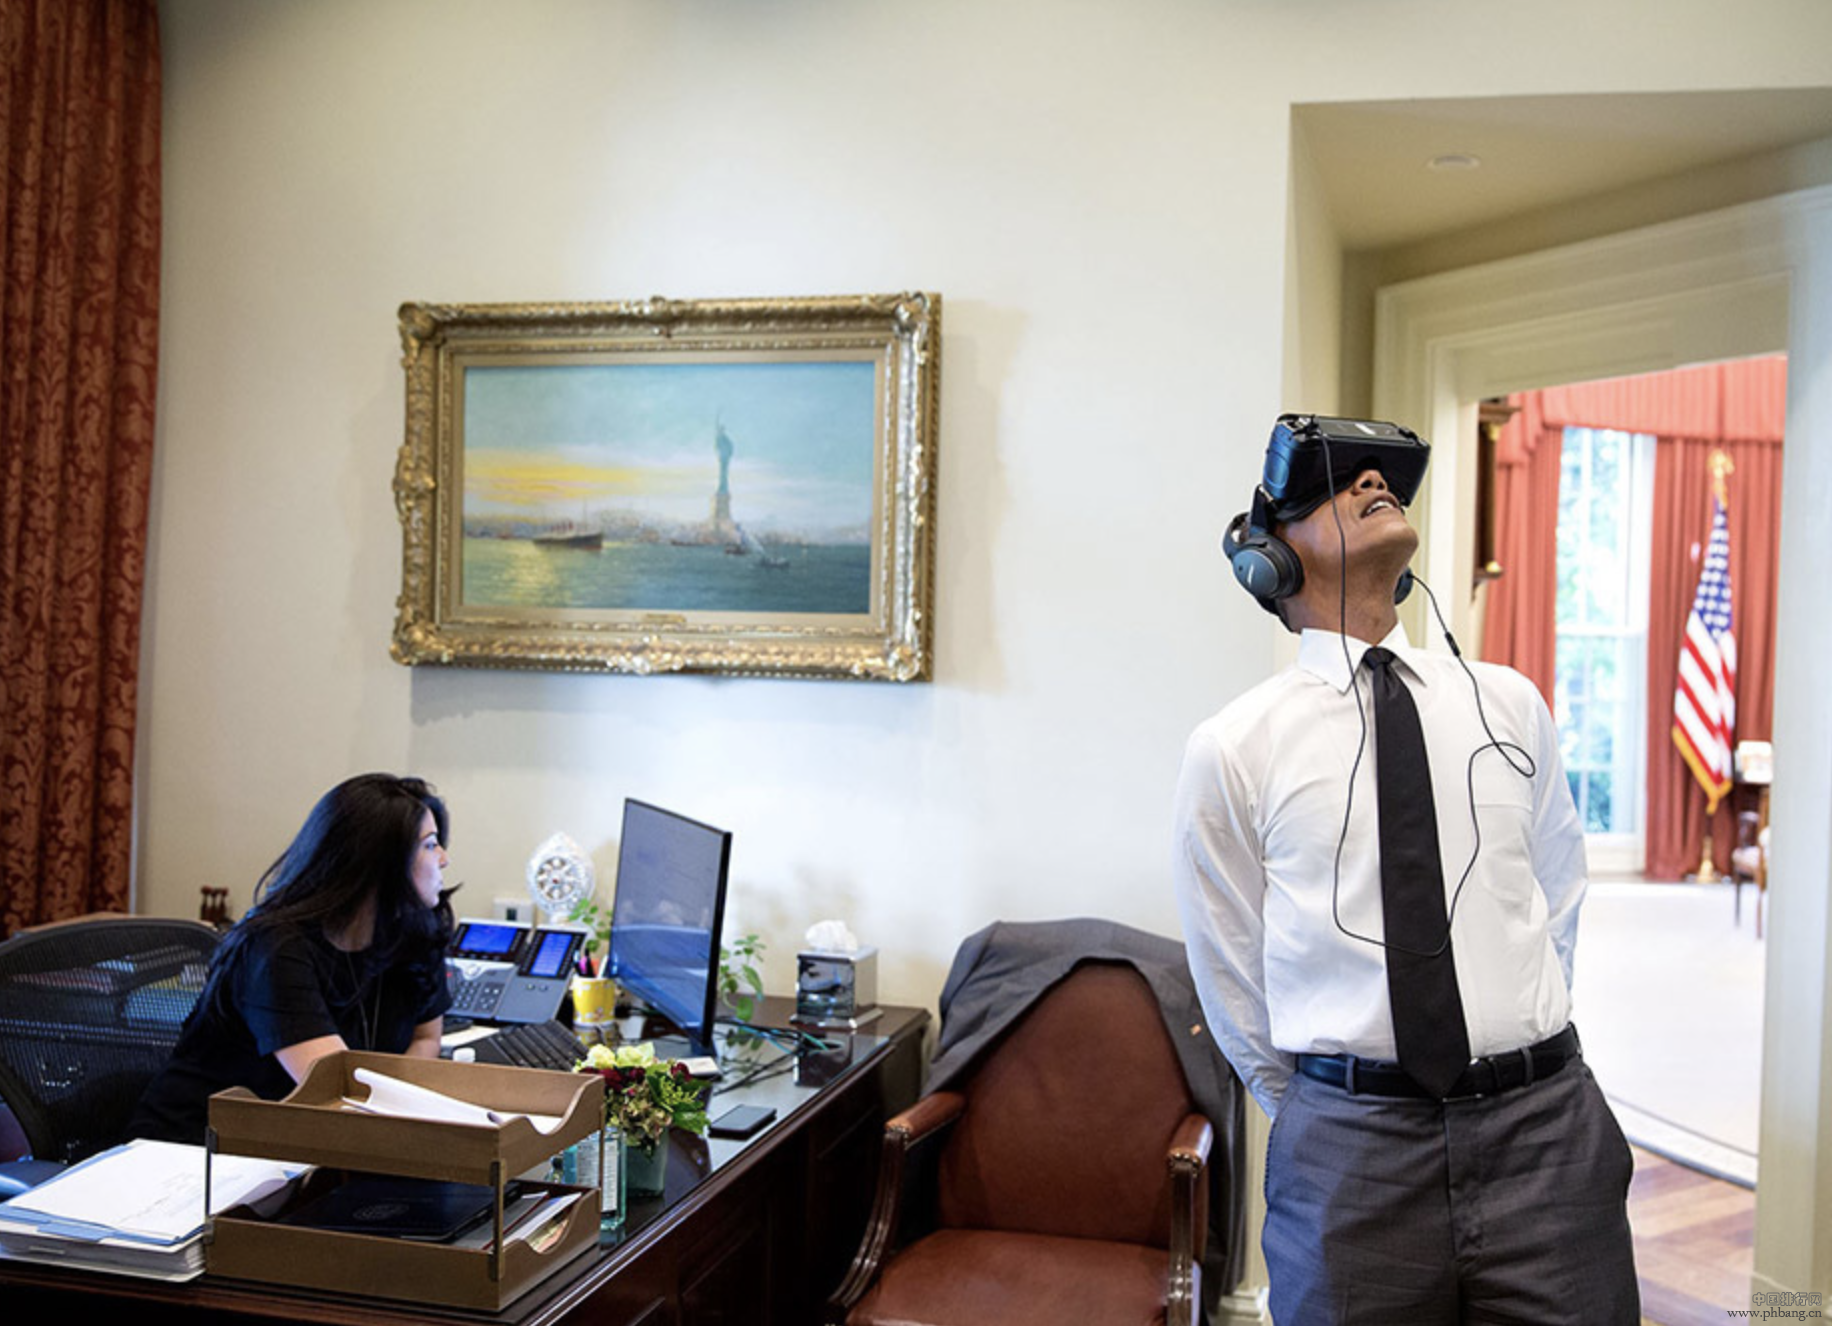 白宫公布奥巴马任内最后一年最佳图片